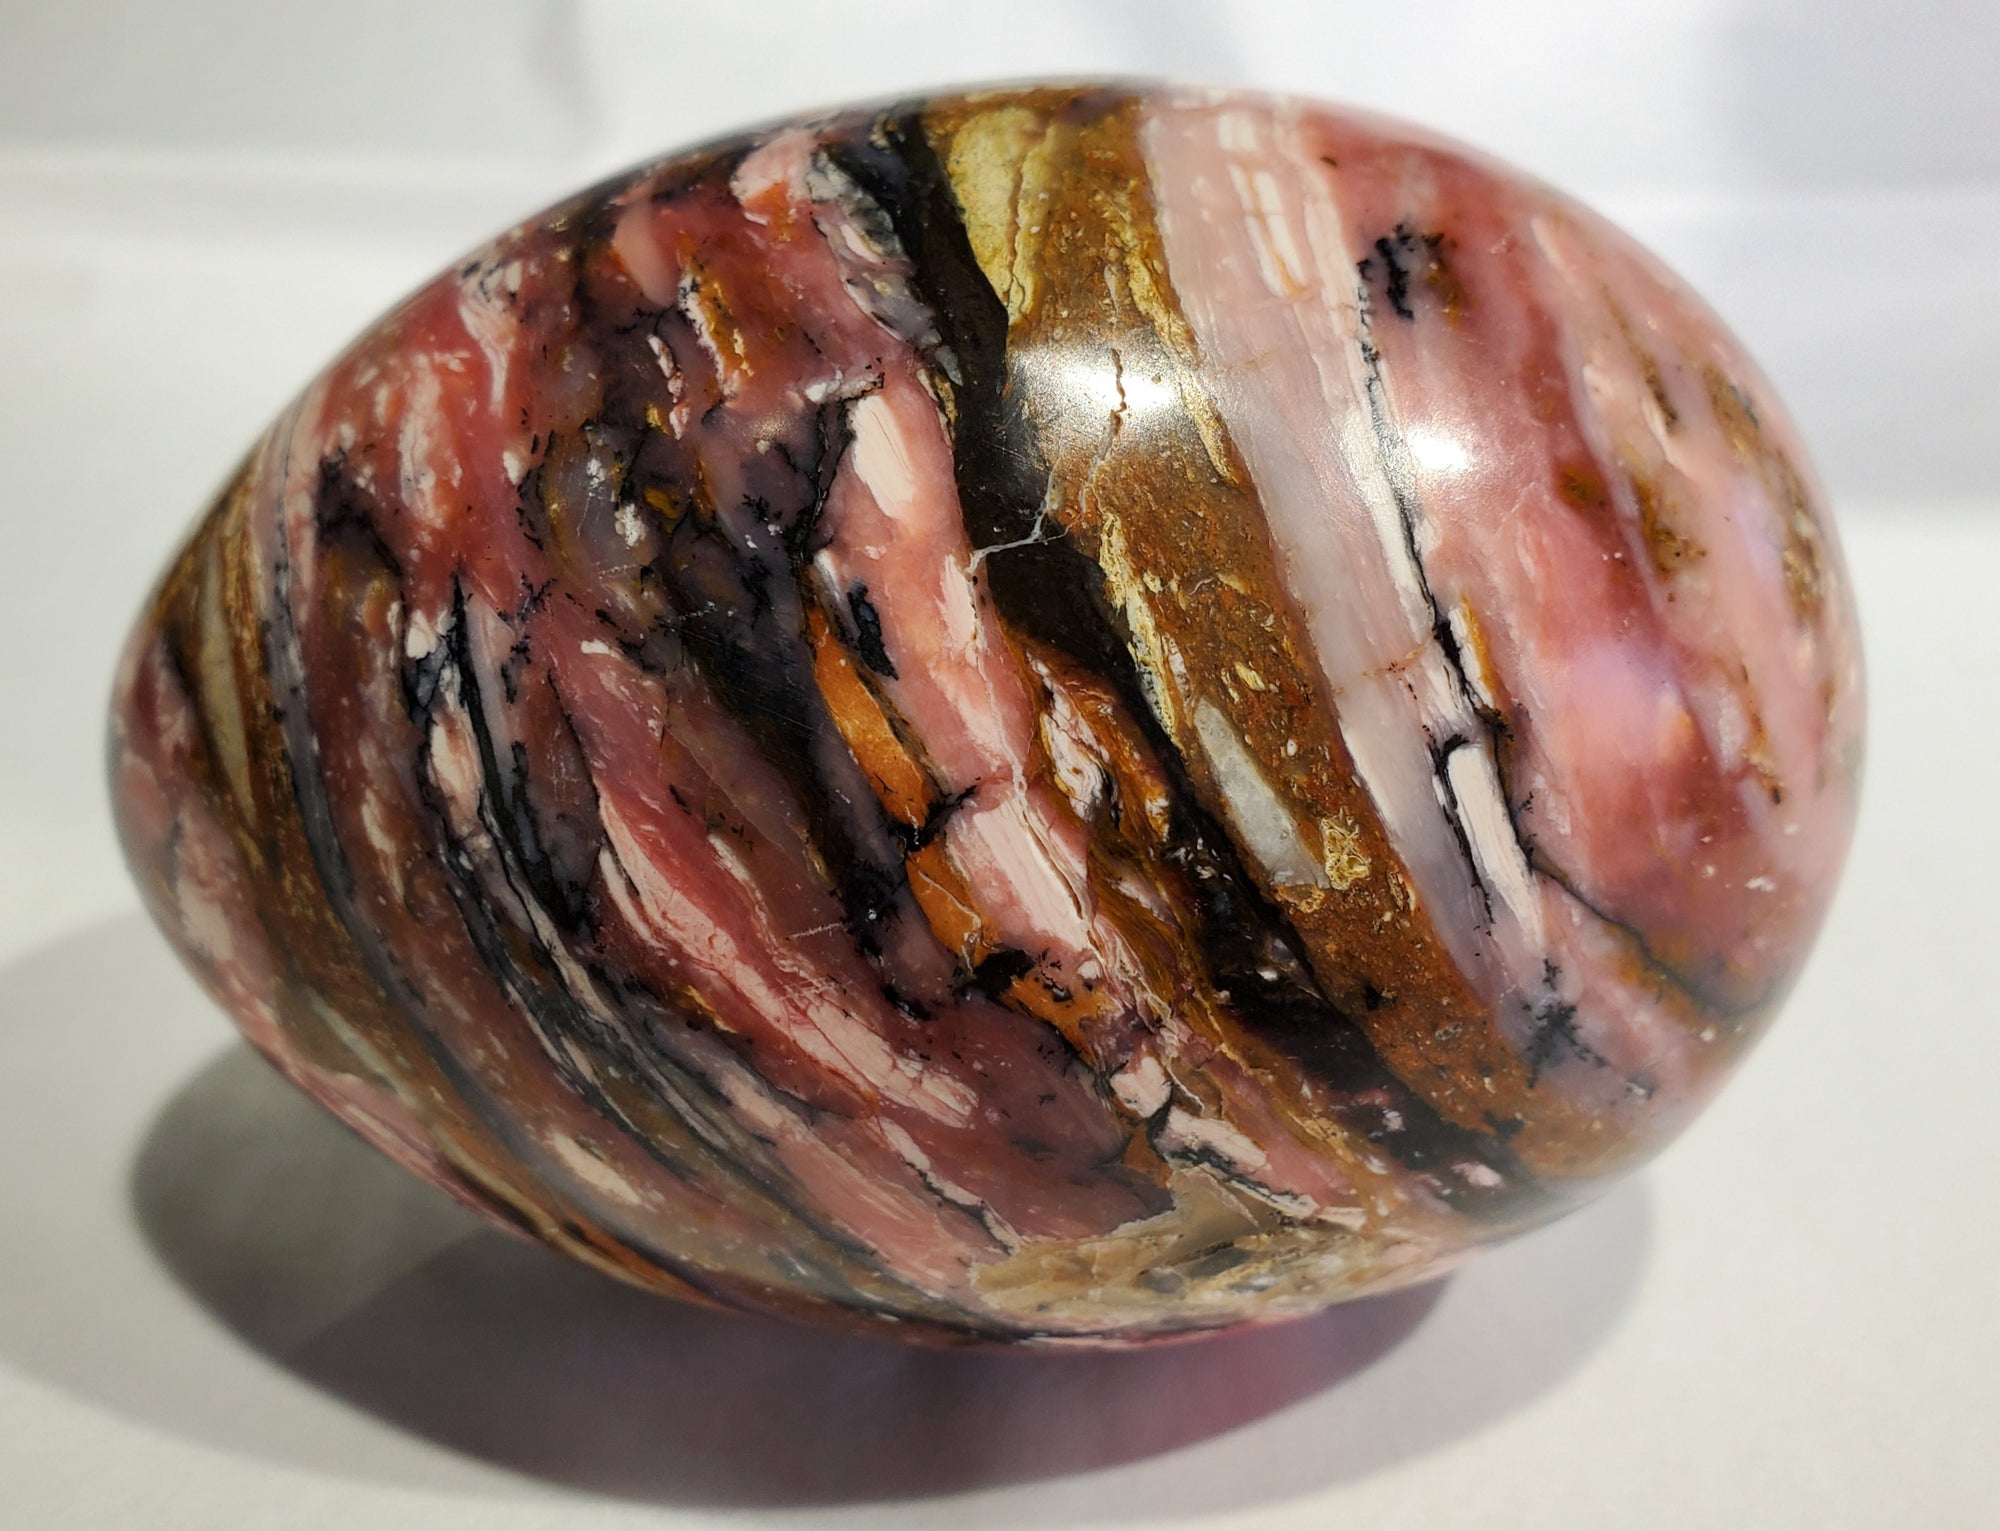 Pink Opal Egg, Peru